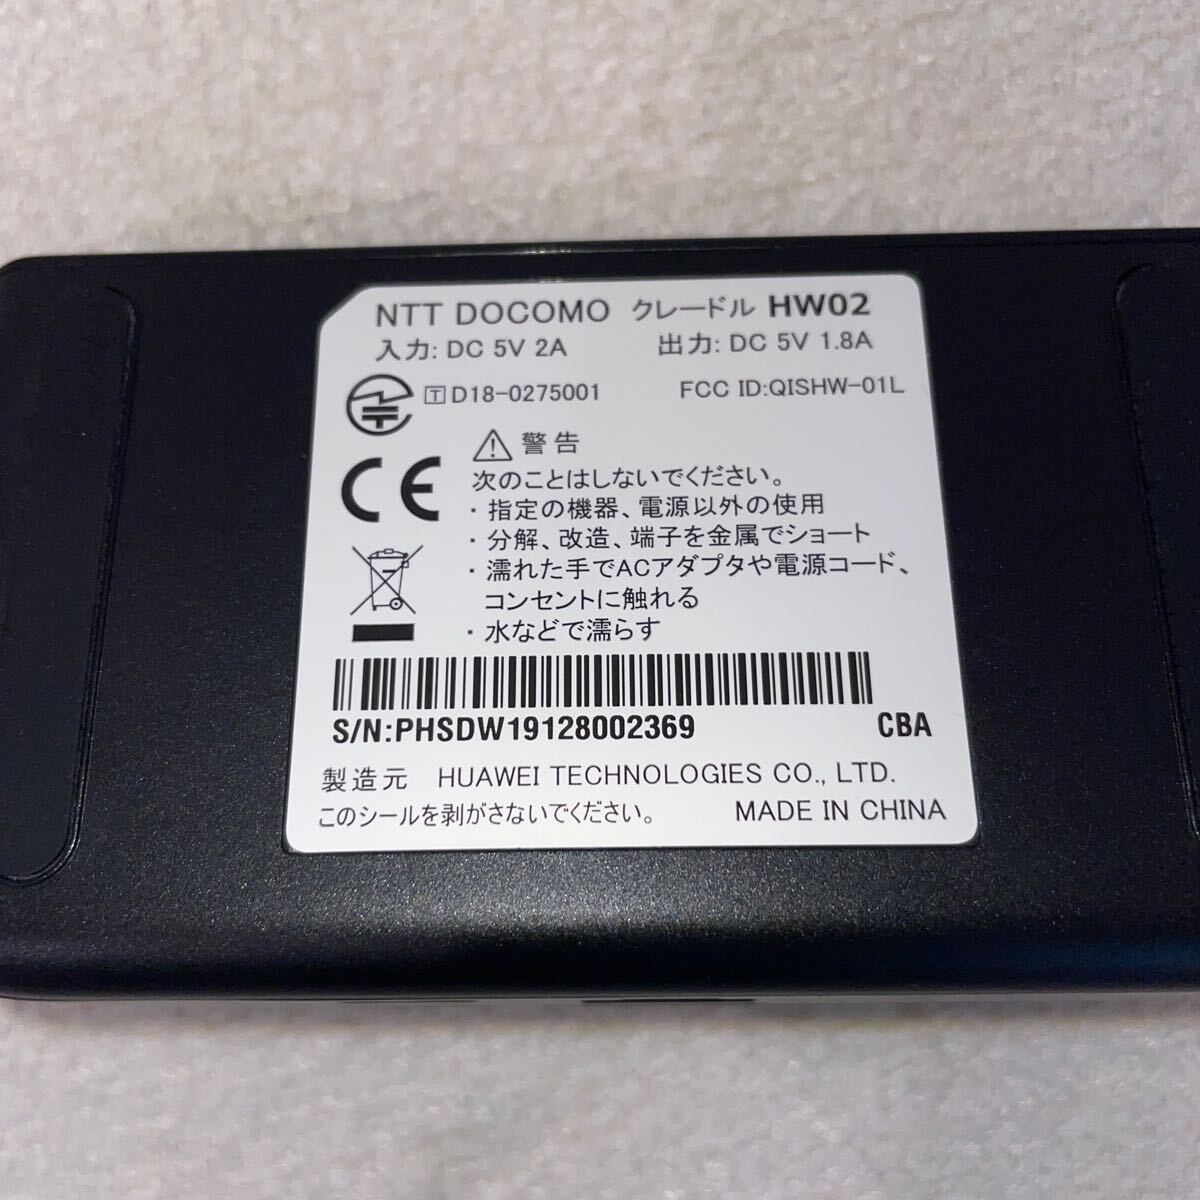 [ прекрасный товар ]DOCOMO Wi-Fi STATION HW-01 SIM свободный переносная сумка, зарядка * проводной LANdok, защитная плёнка имеется 